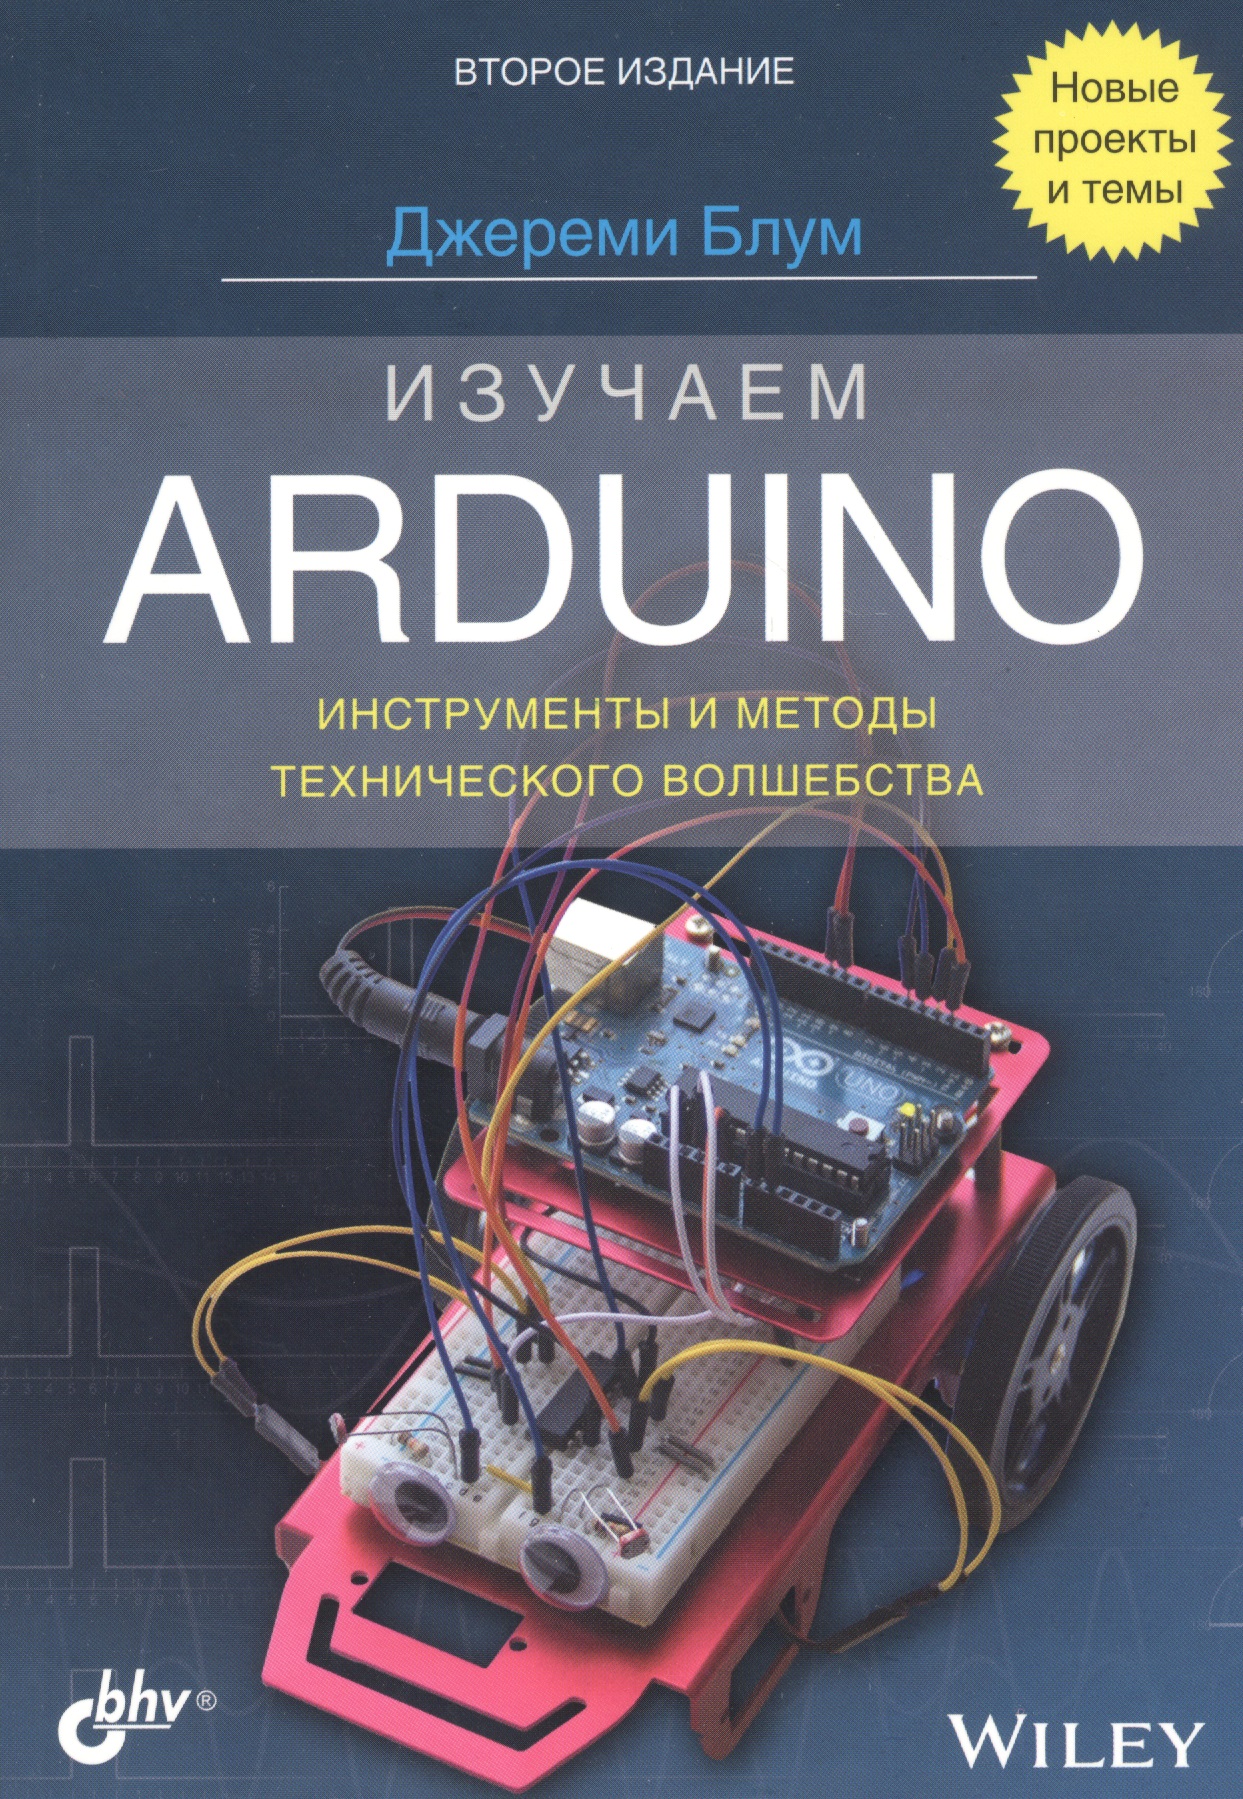 Изучаем Arduino: инструменты и методы технического волшебства блум джереми изучаем arduino инструменты и методы технического волшебства